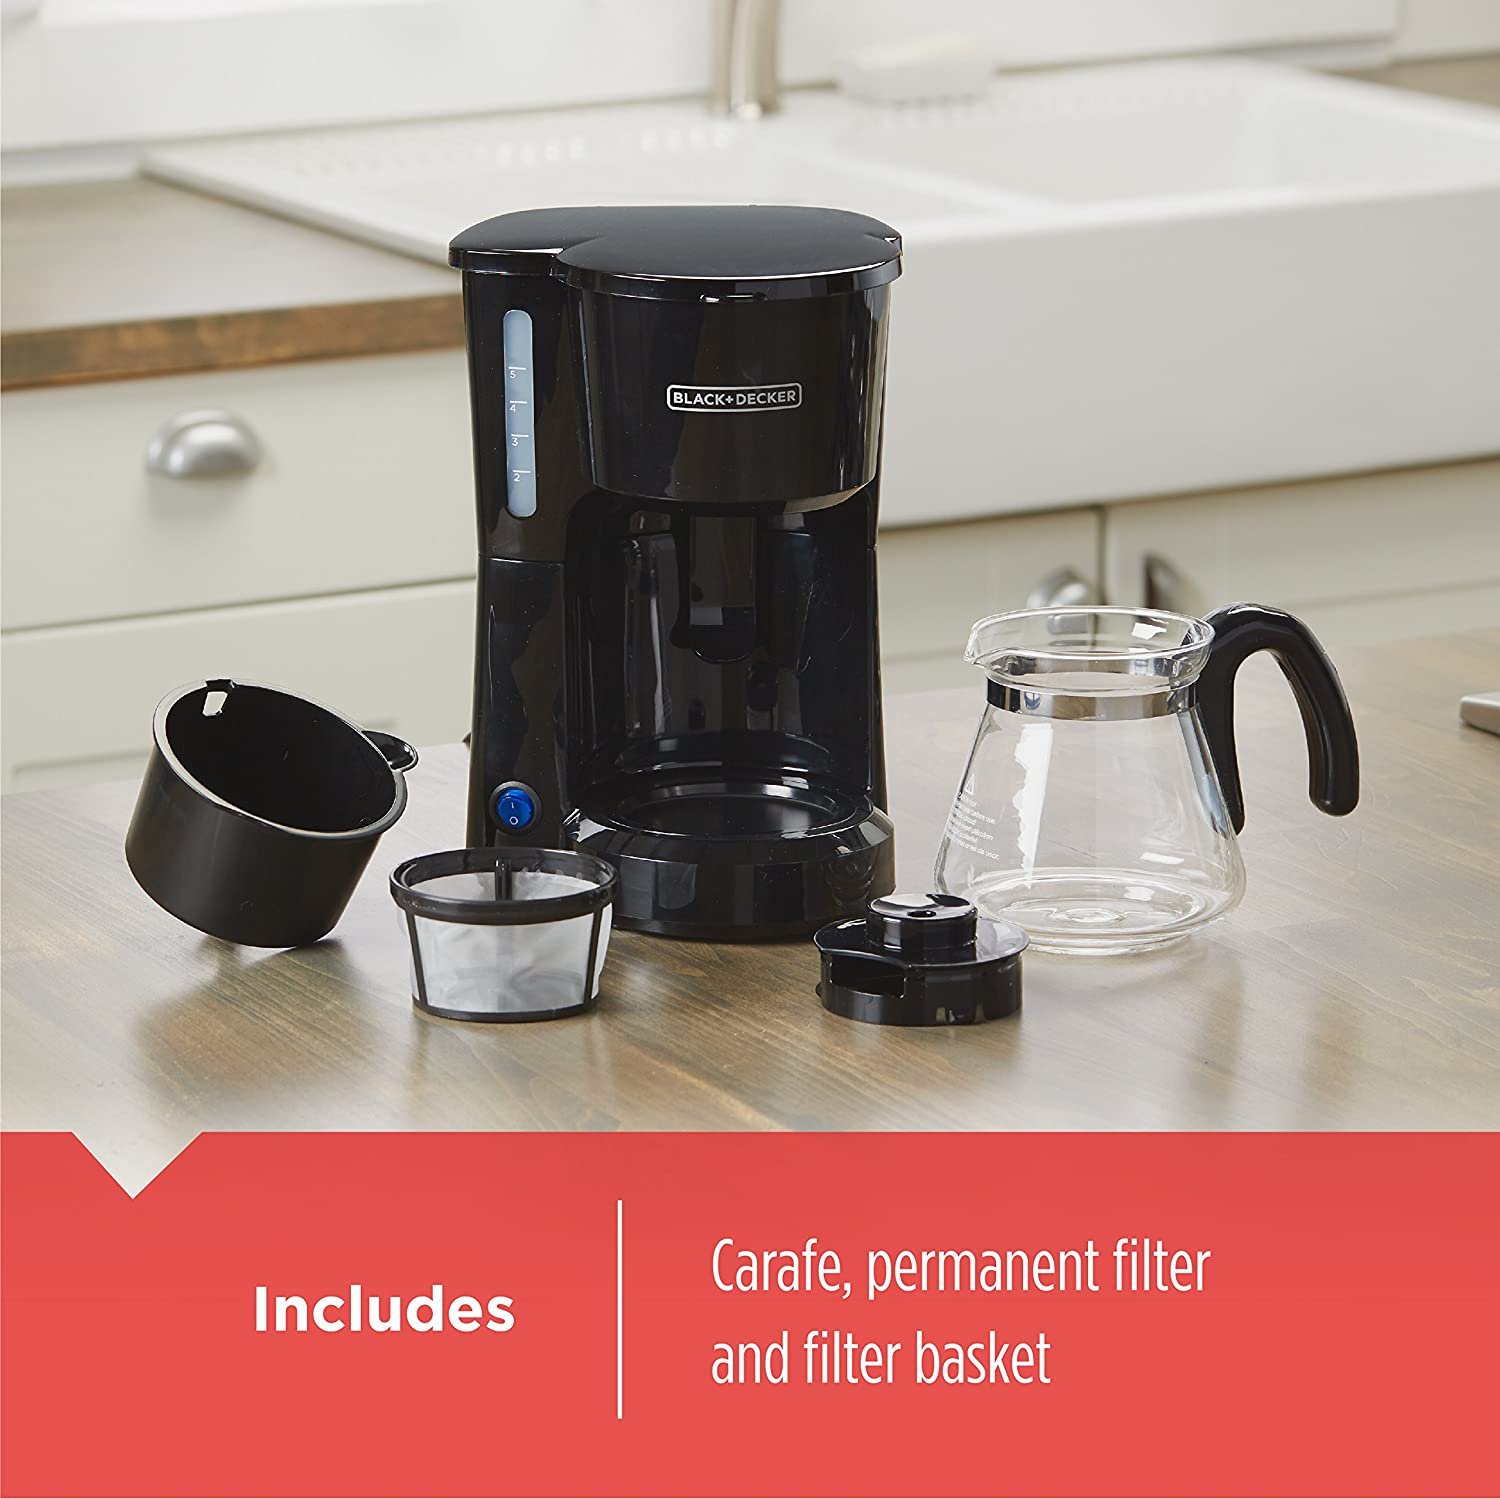 BLACK+DECKER 5-Cup Coffeemaker for home, dorm room, & small coffee shop (Copy) (Copy) (Copy) (Copy)